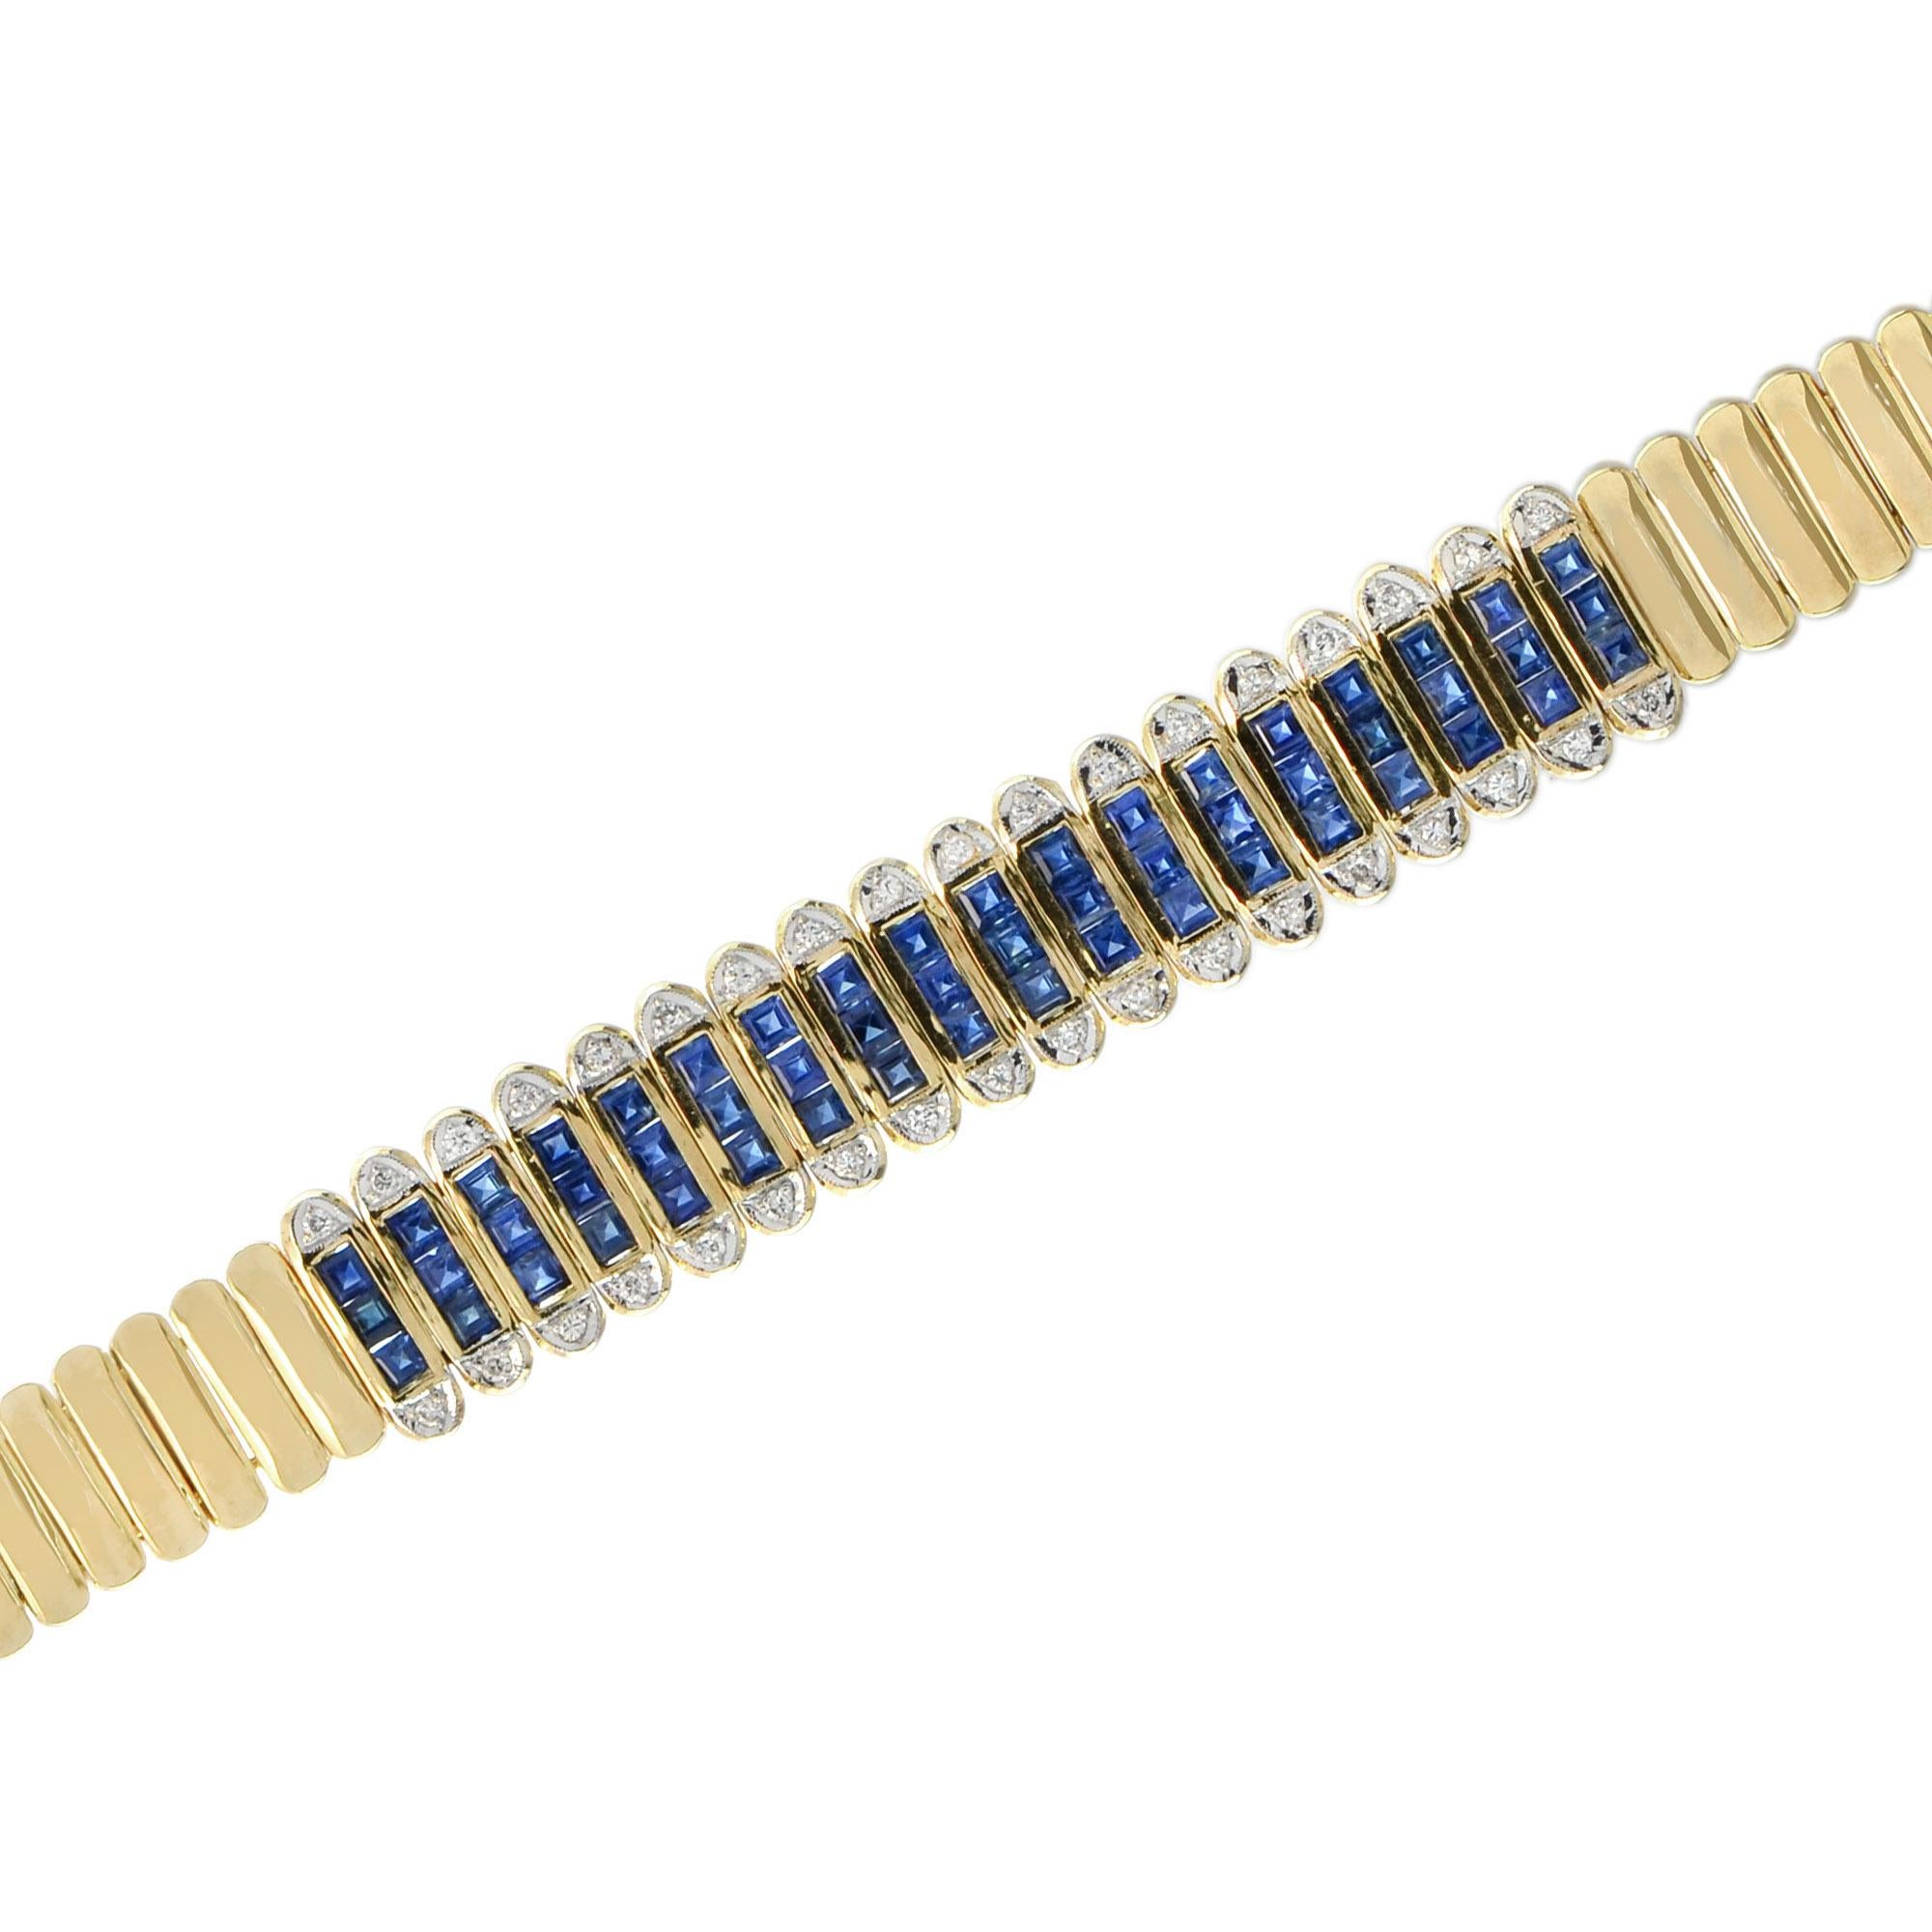 Dieses elegante, vom Art déco inspirierte Armband ist mit 54 blauen Saphiren im französischen Schliff und 36 Diamanten in 18 Karat Gelbgold einfach prächtig. Saphire sind bekannt für ihre Anziehungskraft und die verschiedenen Blautöne und gelten als